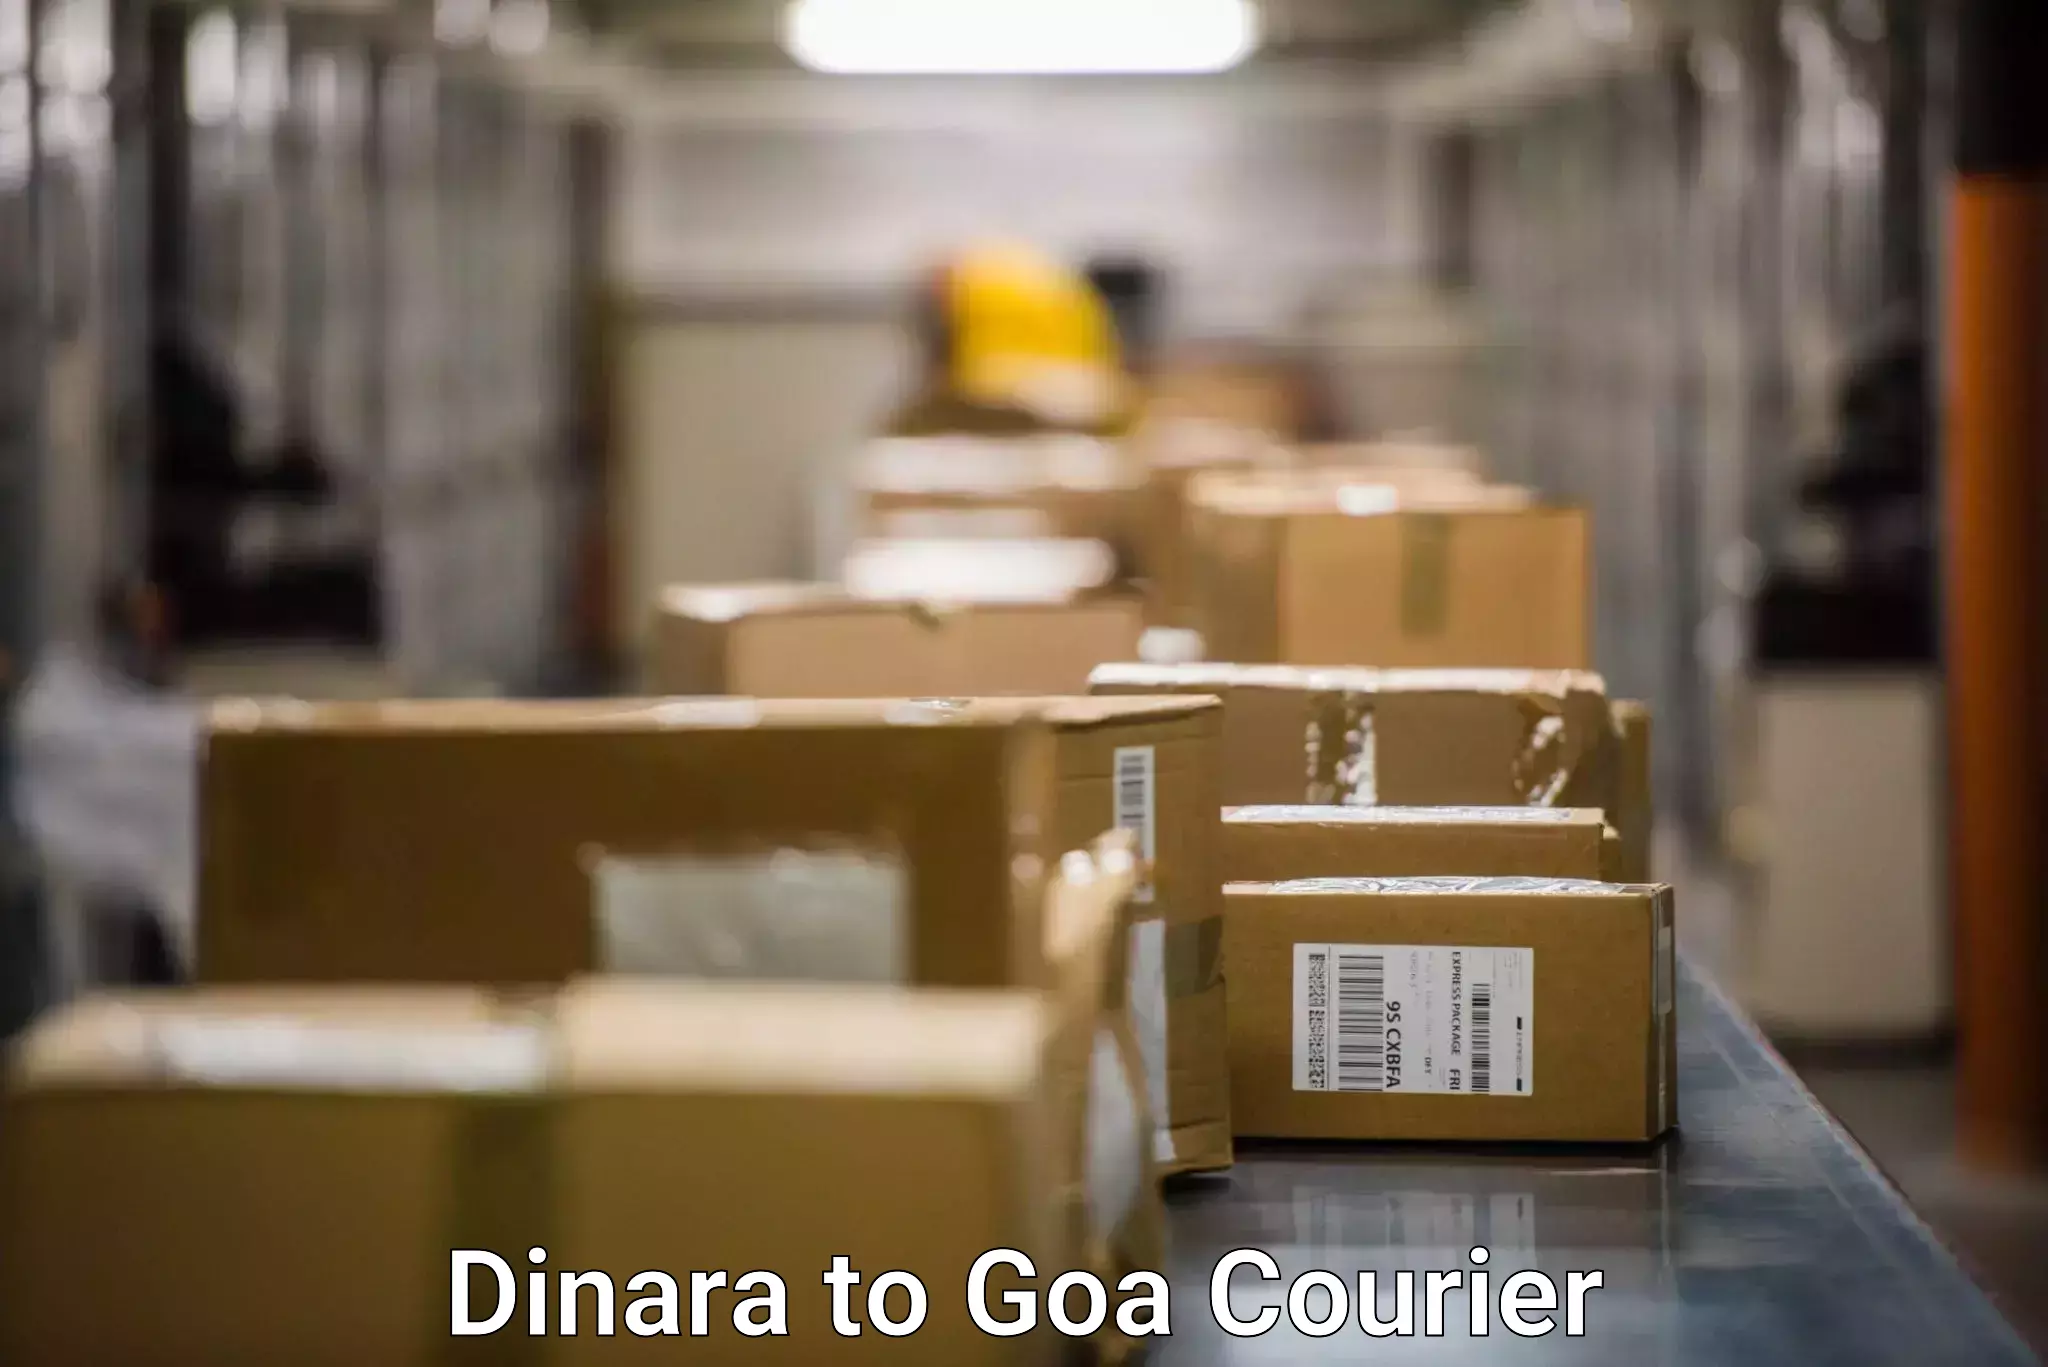 Online shipping calculator Dinara to Goa